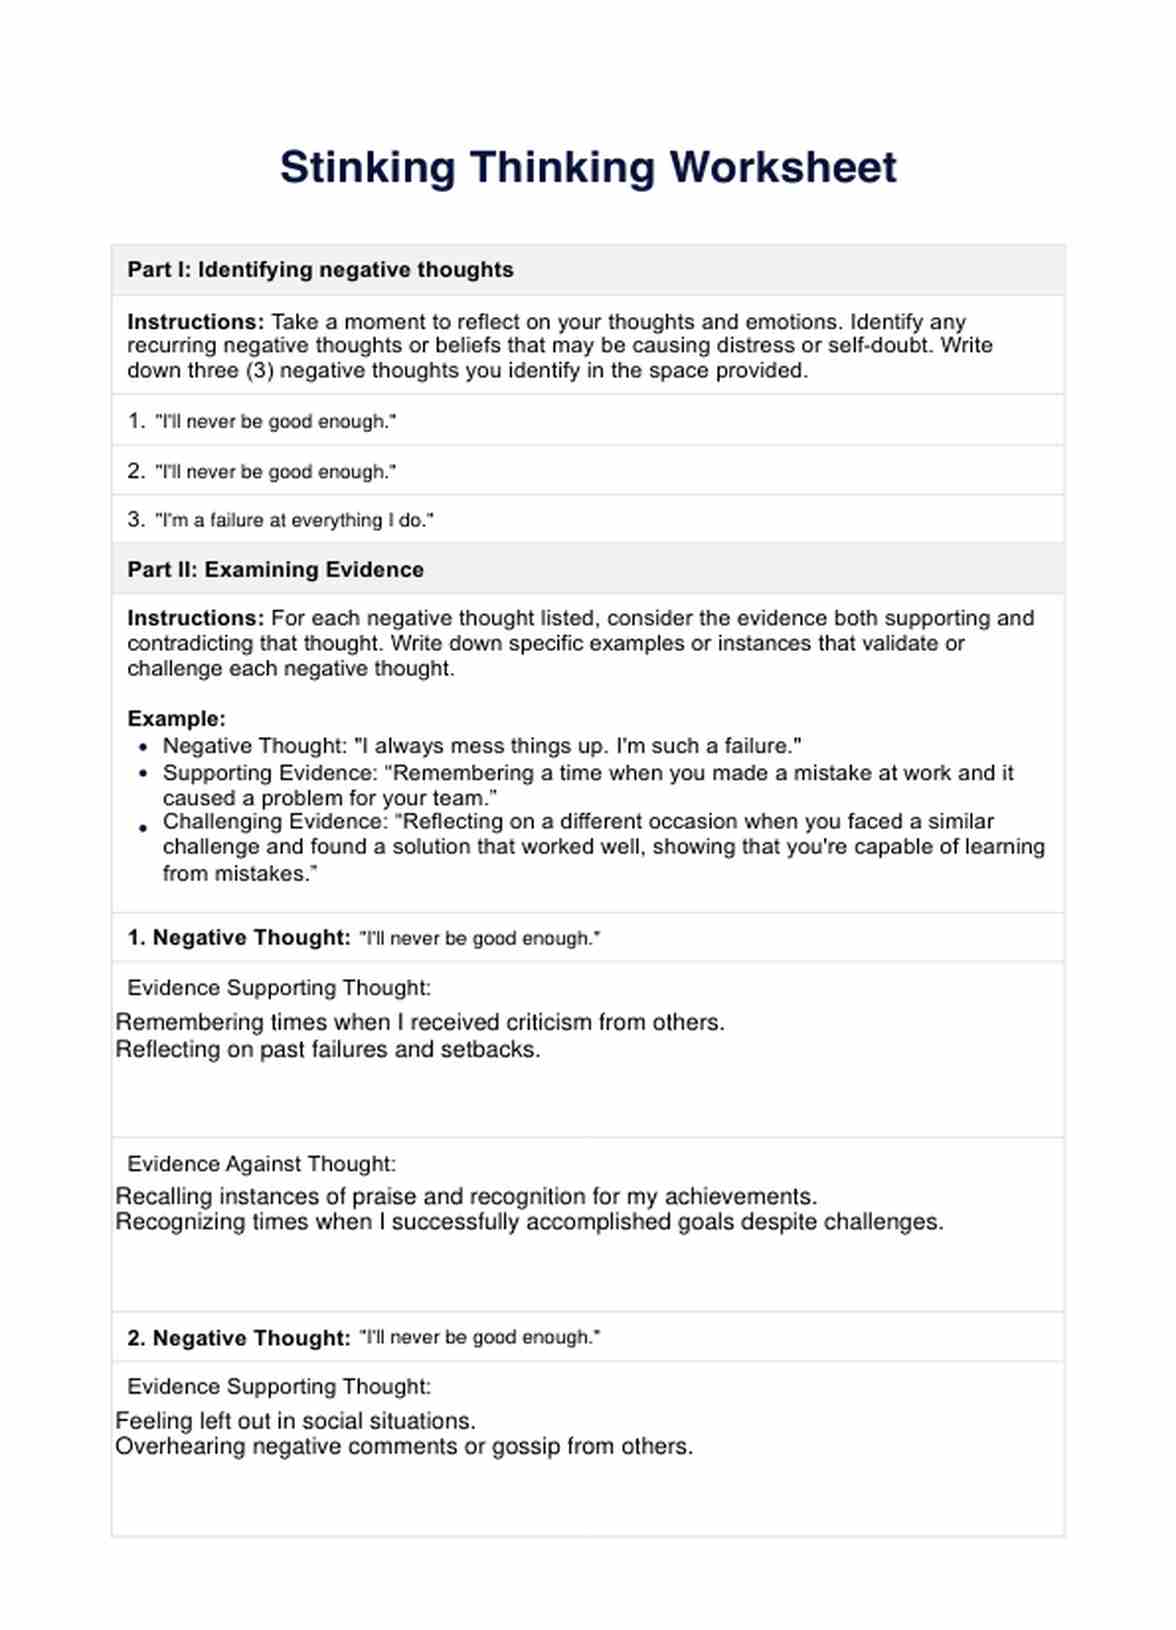 Stinking Thinking Worksheet PDF Example